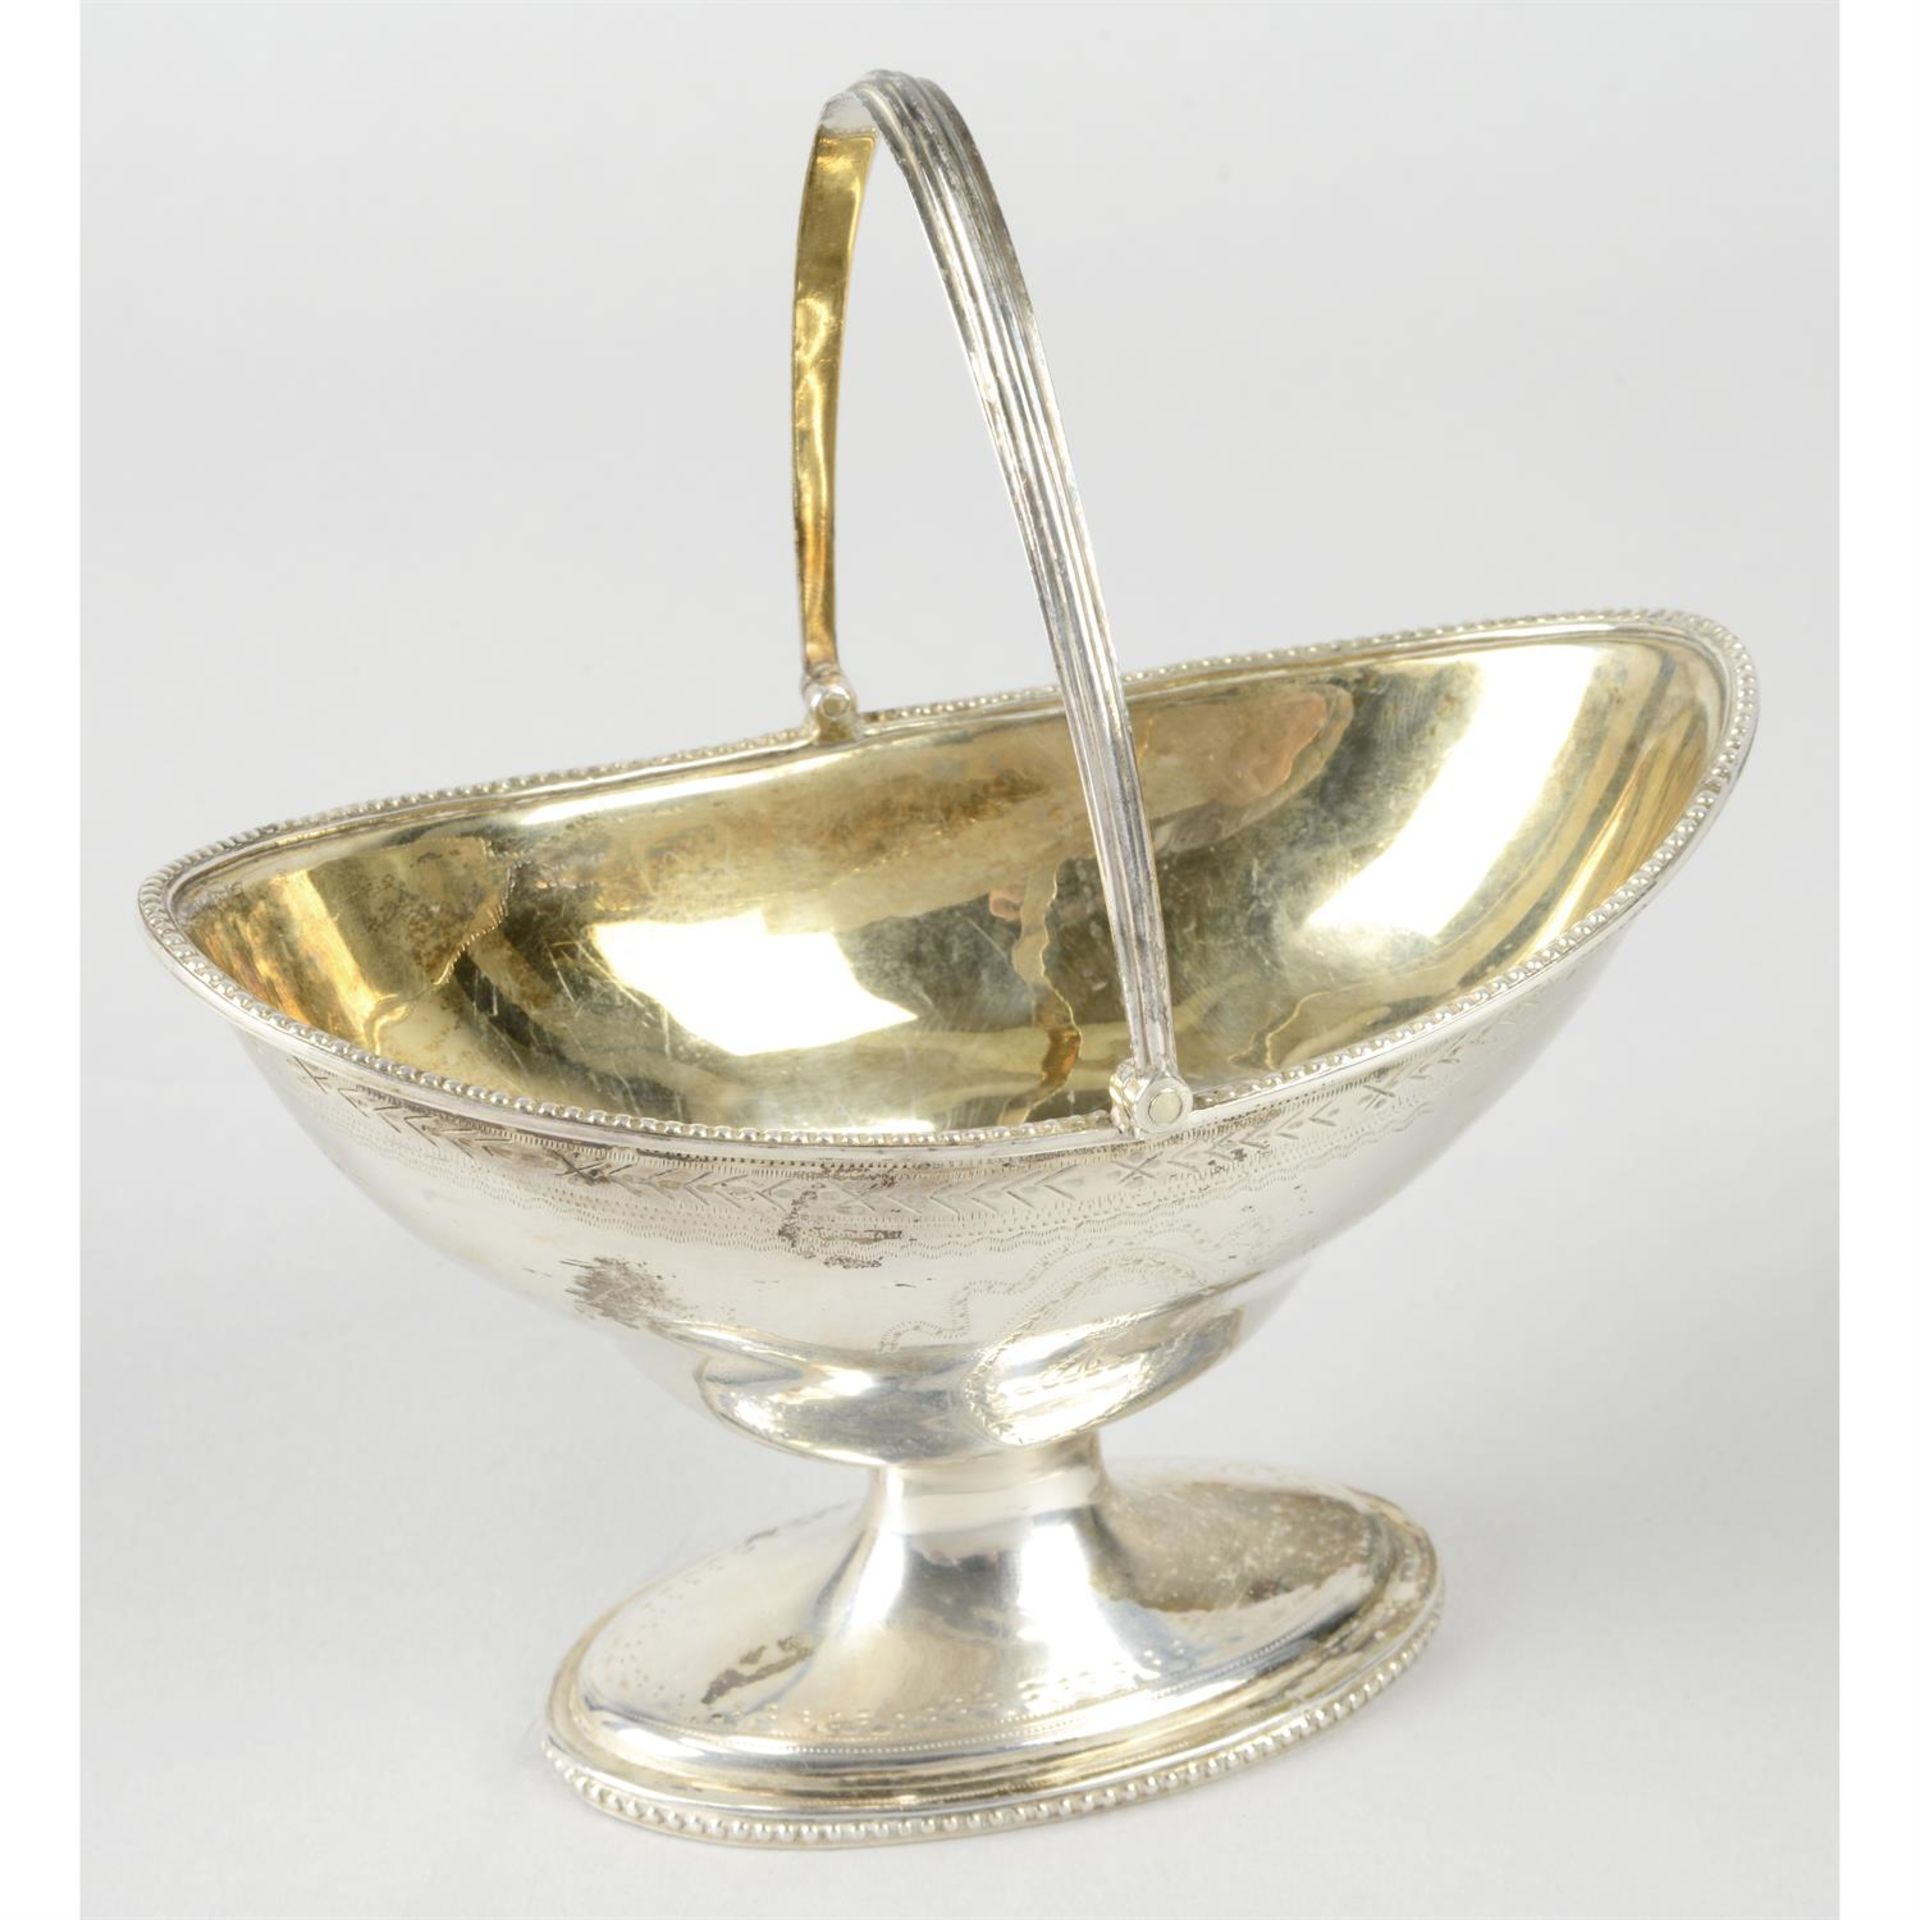 George III silver pedestal sugar basket by Hester Bateman.